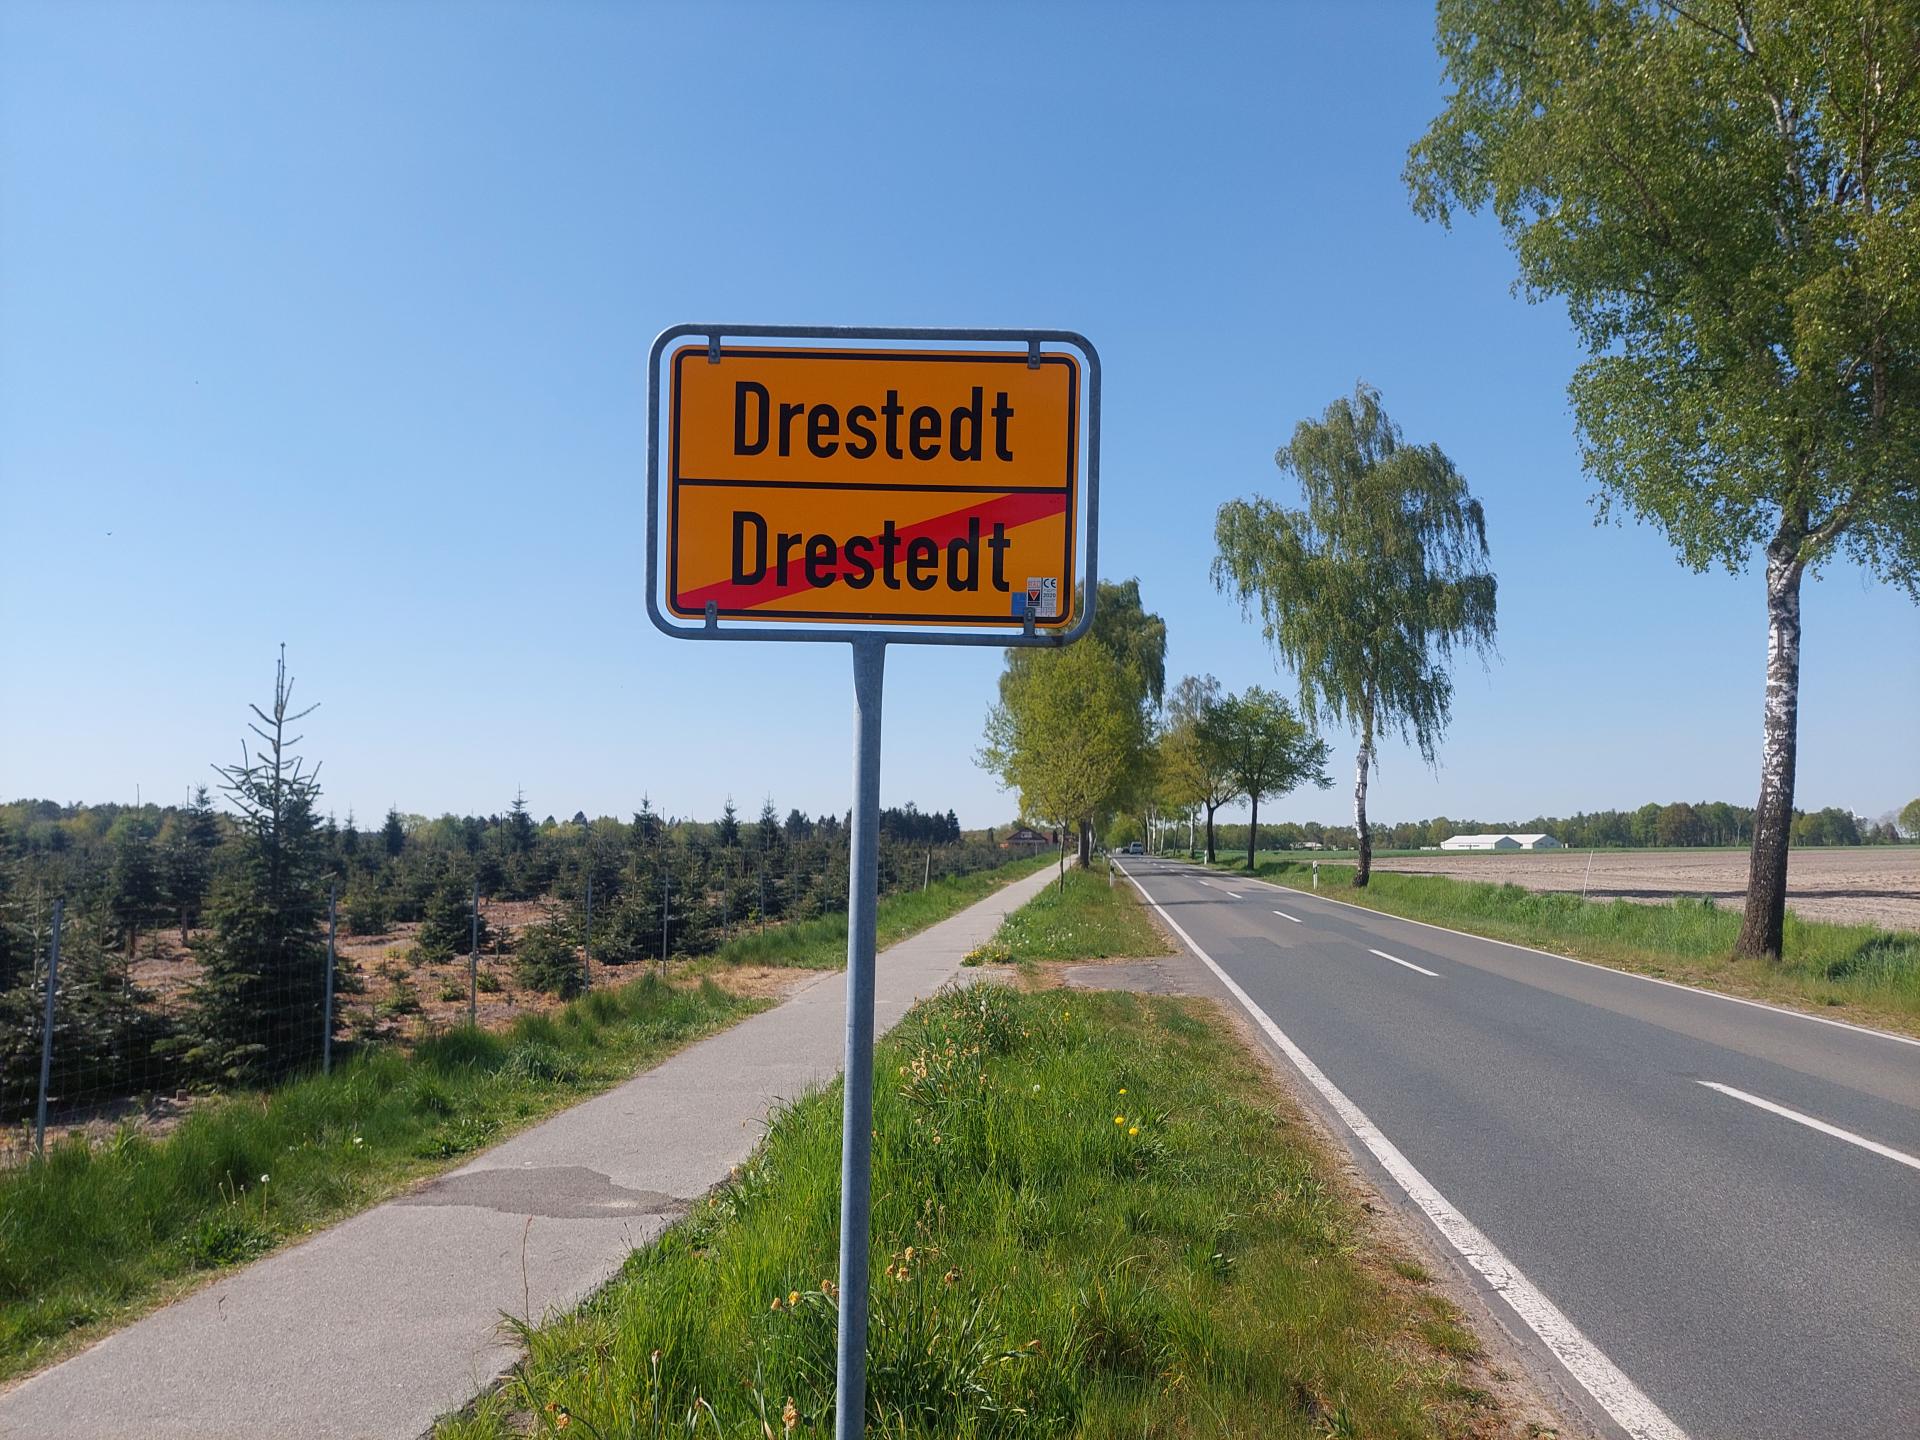 Drestedt